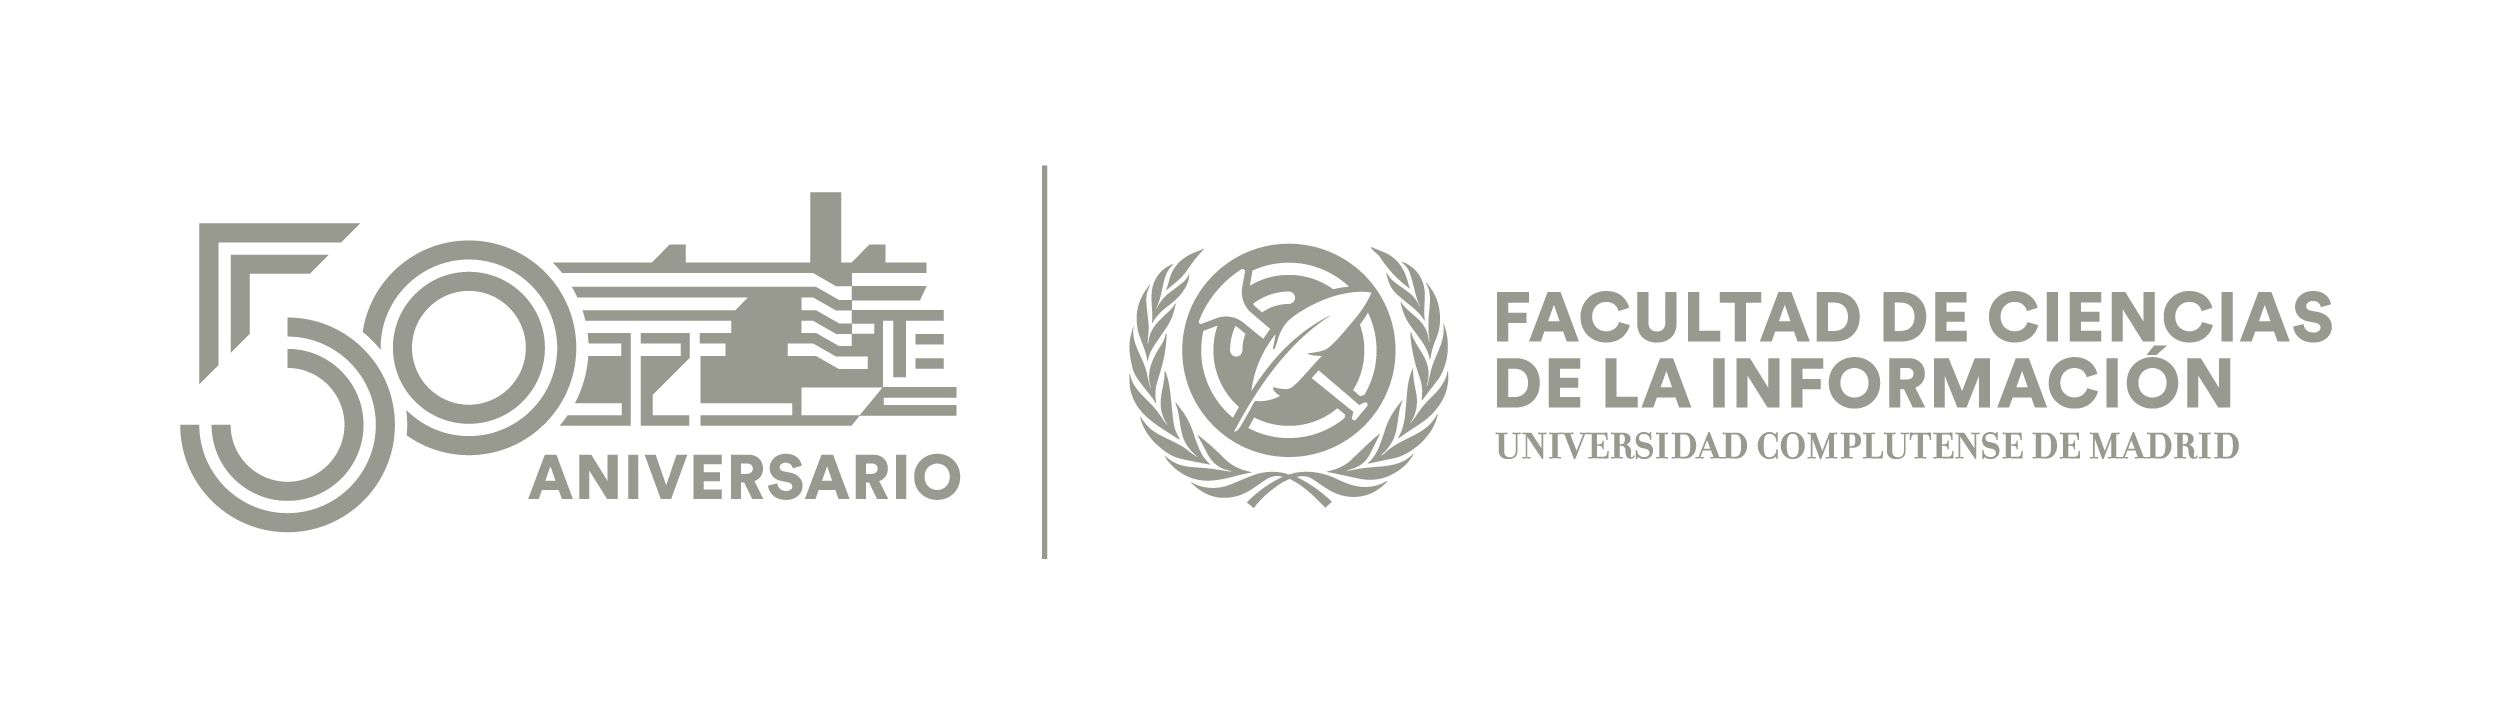 Logotipo Facultad de Ciencias de la Información y 50 aniversario